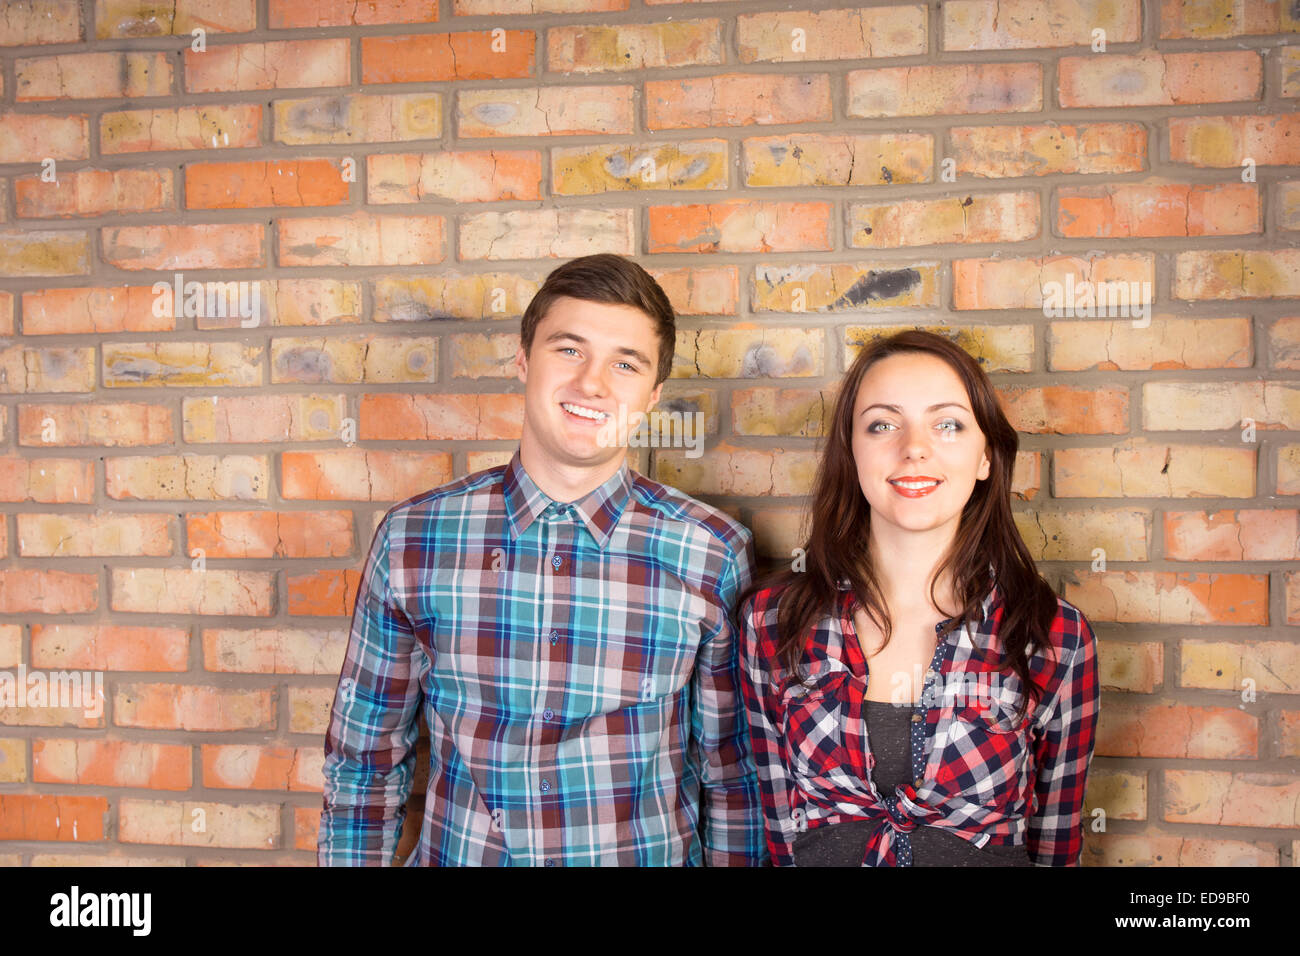 Taille, Porträt von lächelnd Young paar tragen Plaid Shirts stehen gemeinsam vor Backsteinmauer Stockfoto